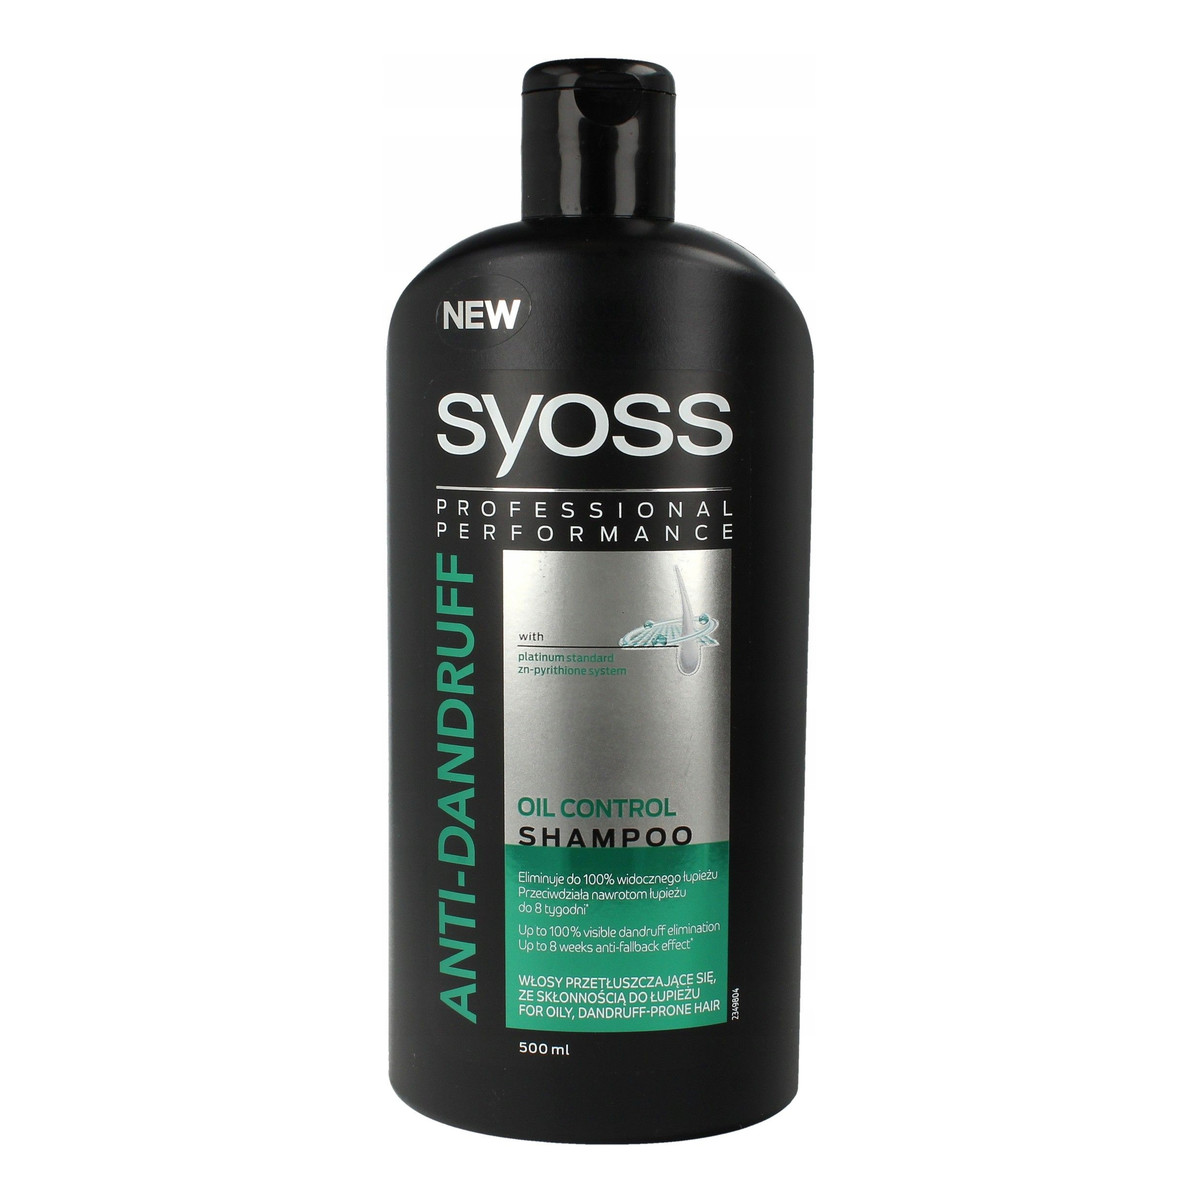 syoss anti-dandruff szampon do włosów 500 ml